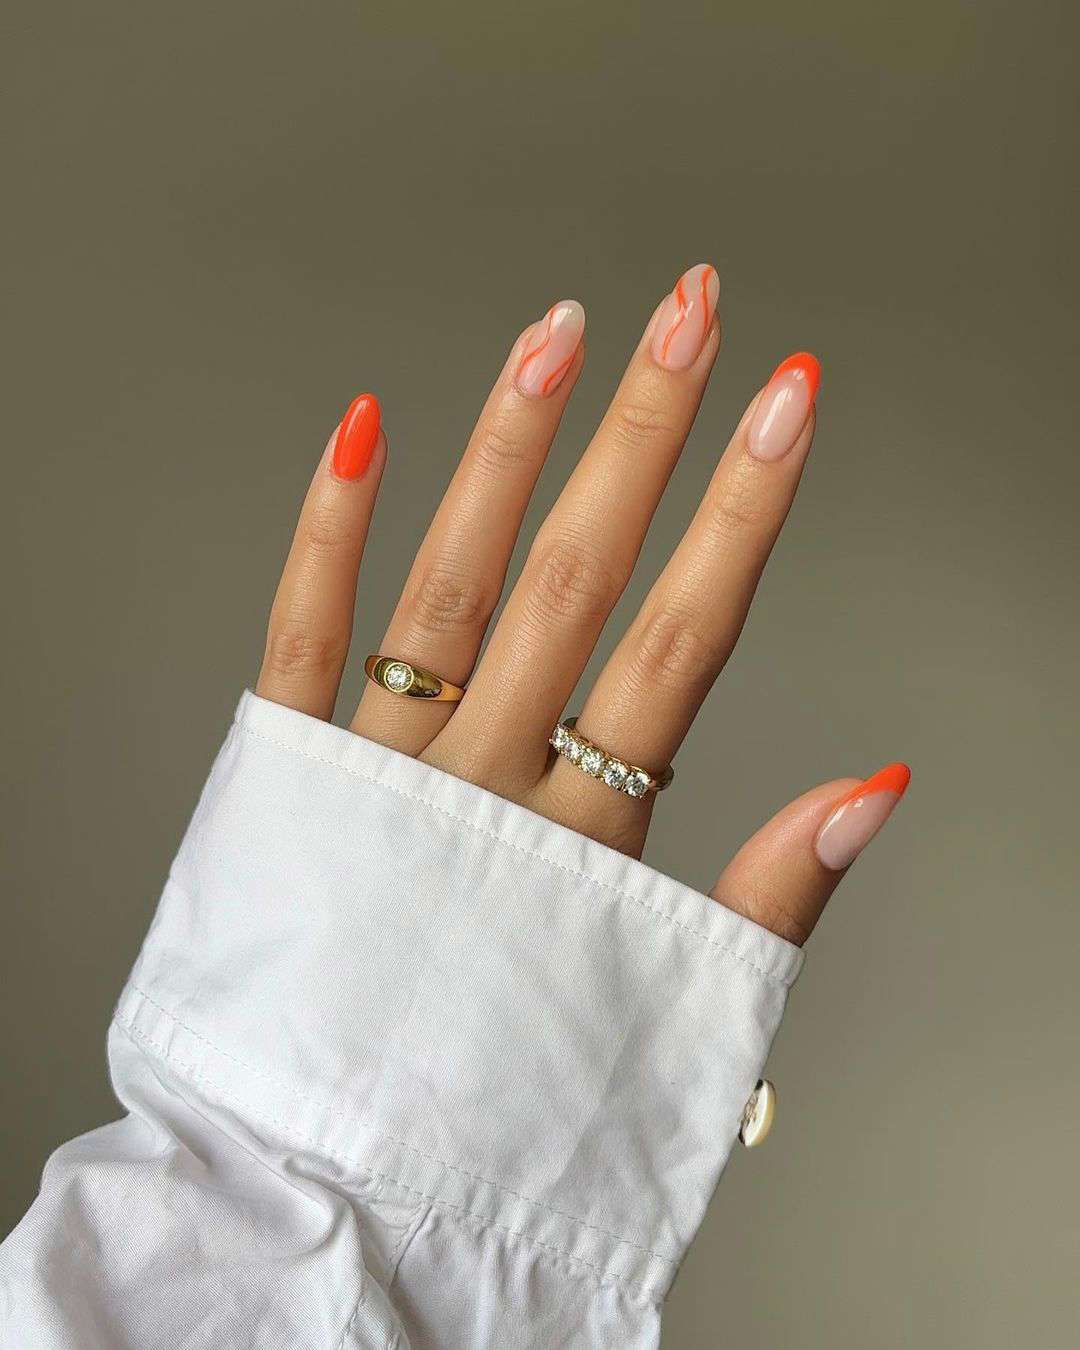 5 colores de uñas que es mejor reservar: naranja